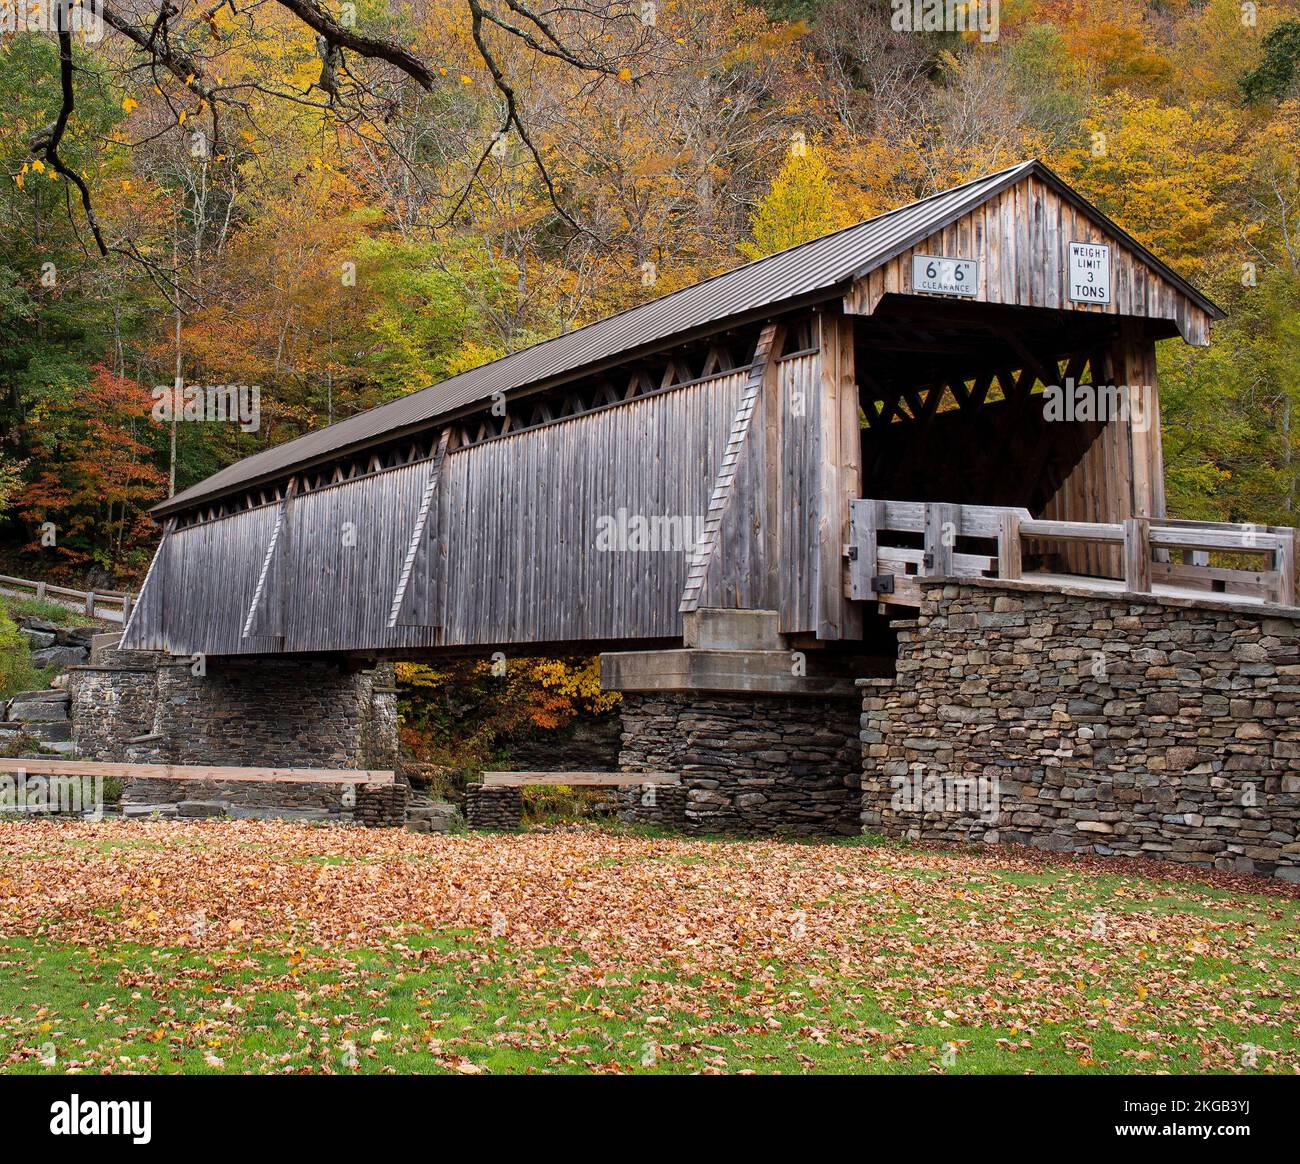 Pont couvert de bois rural au-dessus d'une rivière calme, couleurs vives des feuilles d'automne dans les collines boisées. Journée d'automne. Banque D'Images